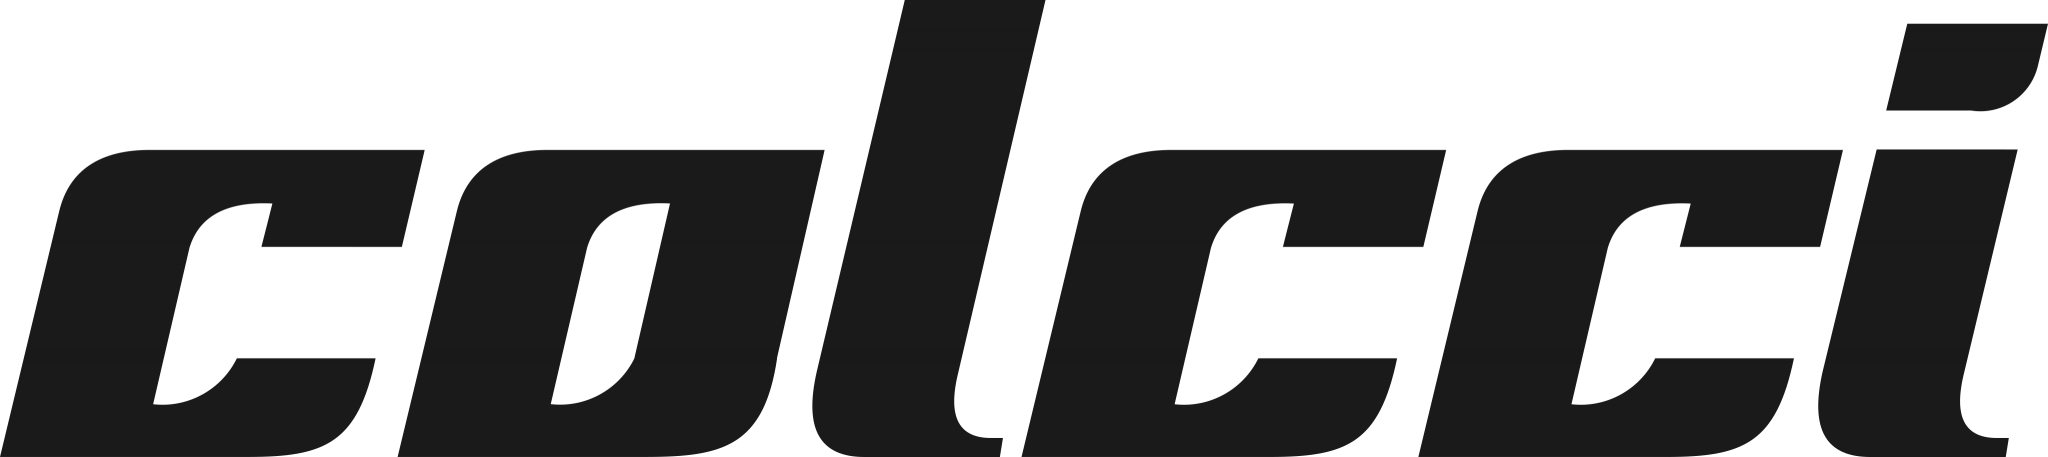 Colcci Logo - PNG e Vetor - Download de Logo